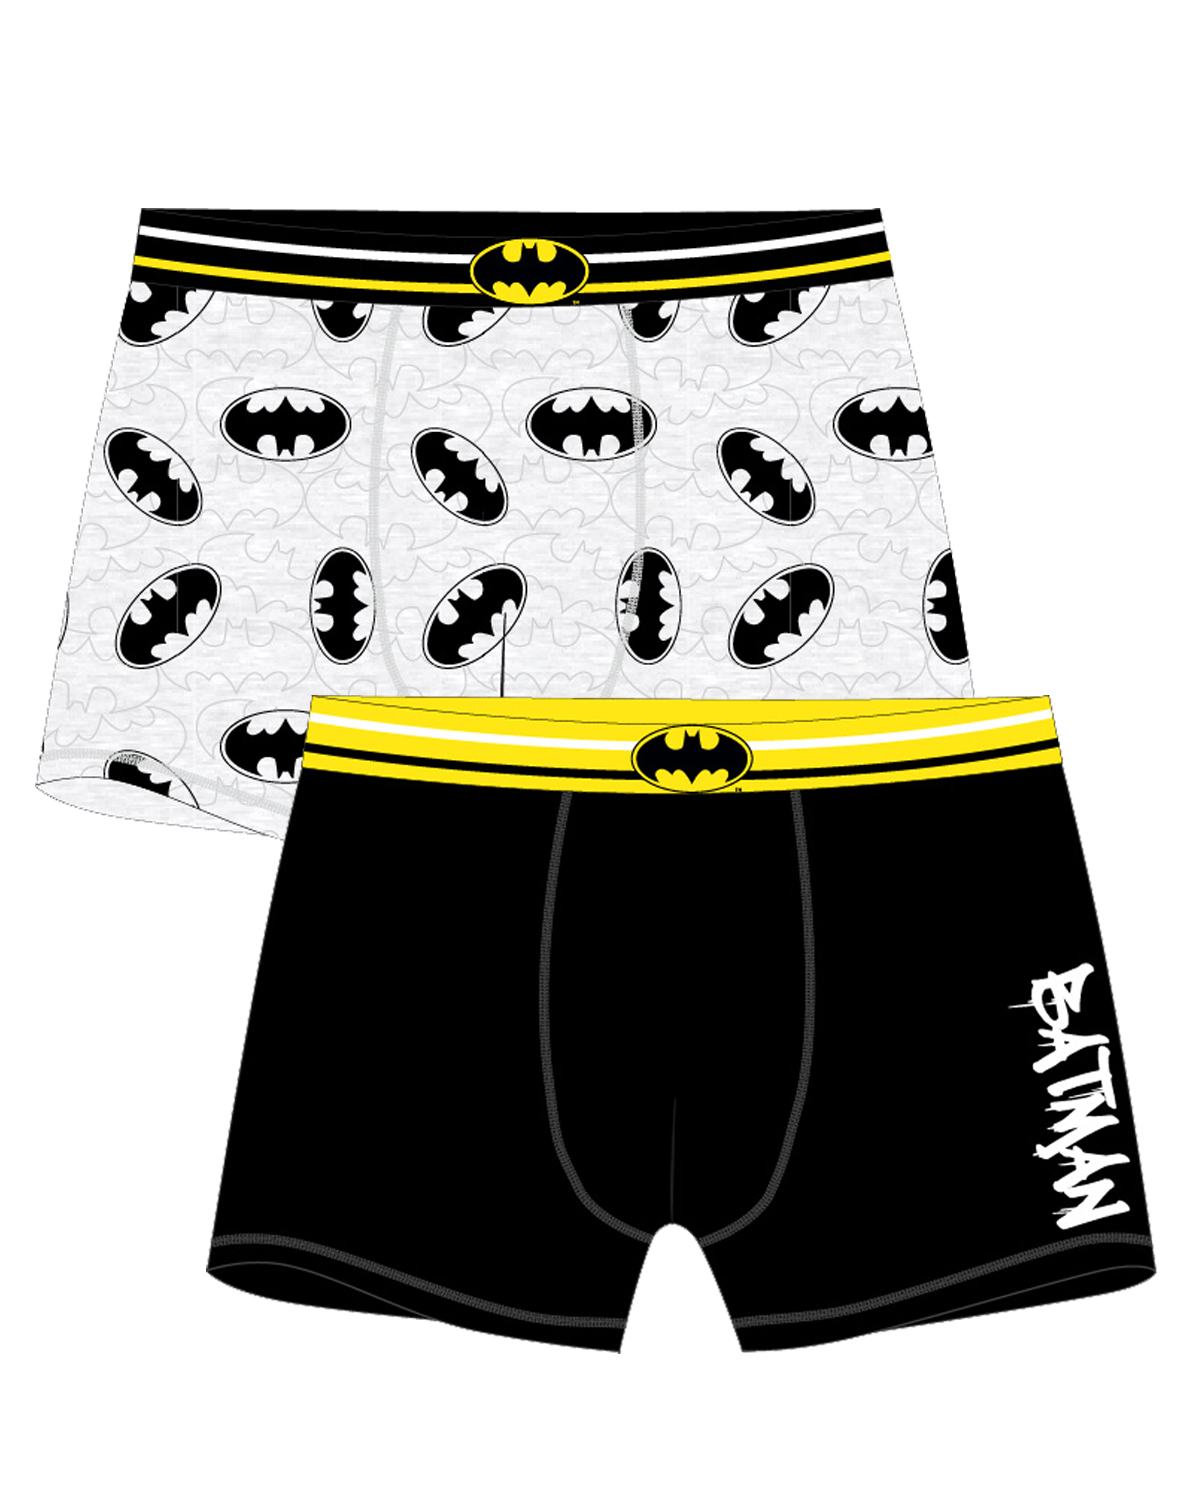 Batman - licence Pánské boxerky - Batman 5333527, černá / šedý melír Barva: Mix barev, Velikost: L